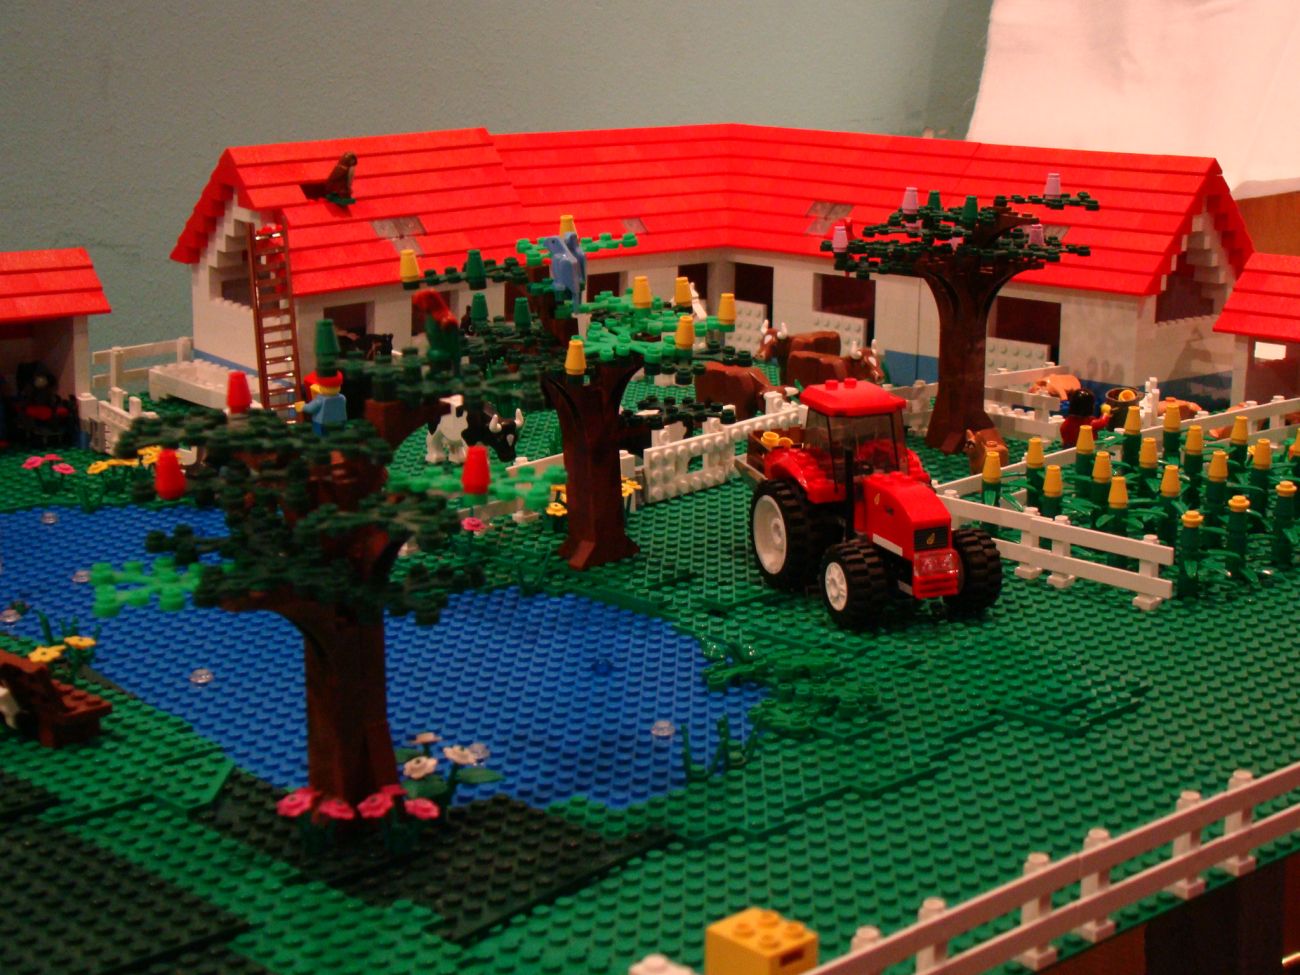 Filhos (antigo): Exposição de Lego